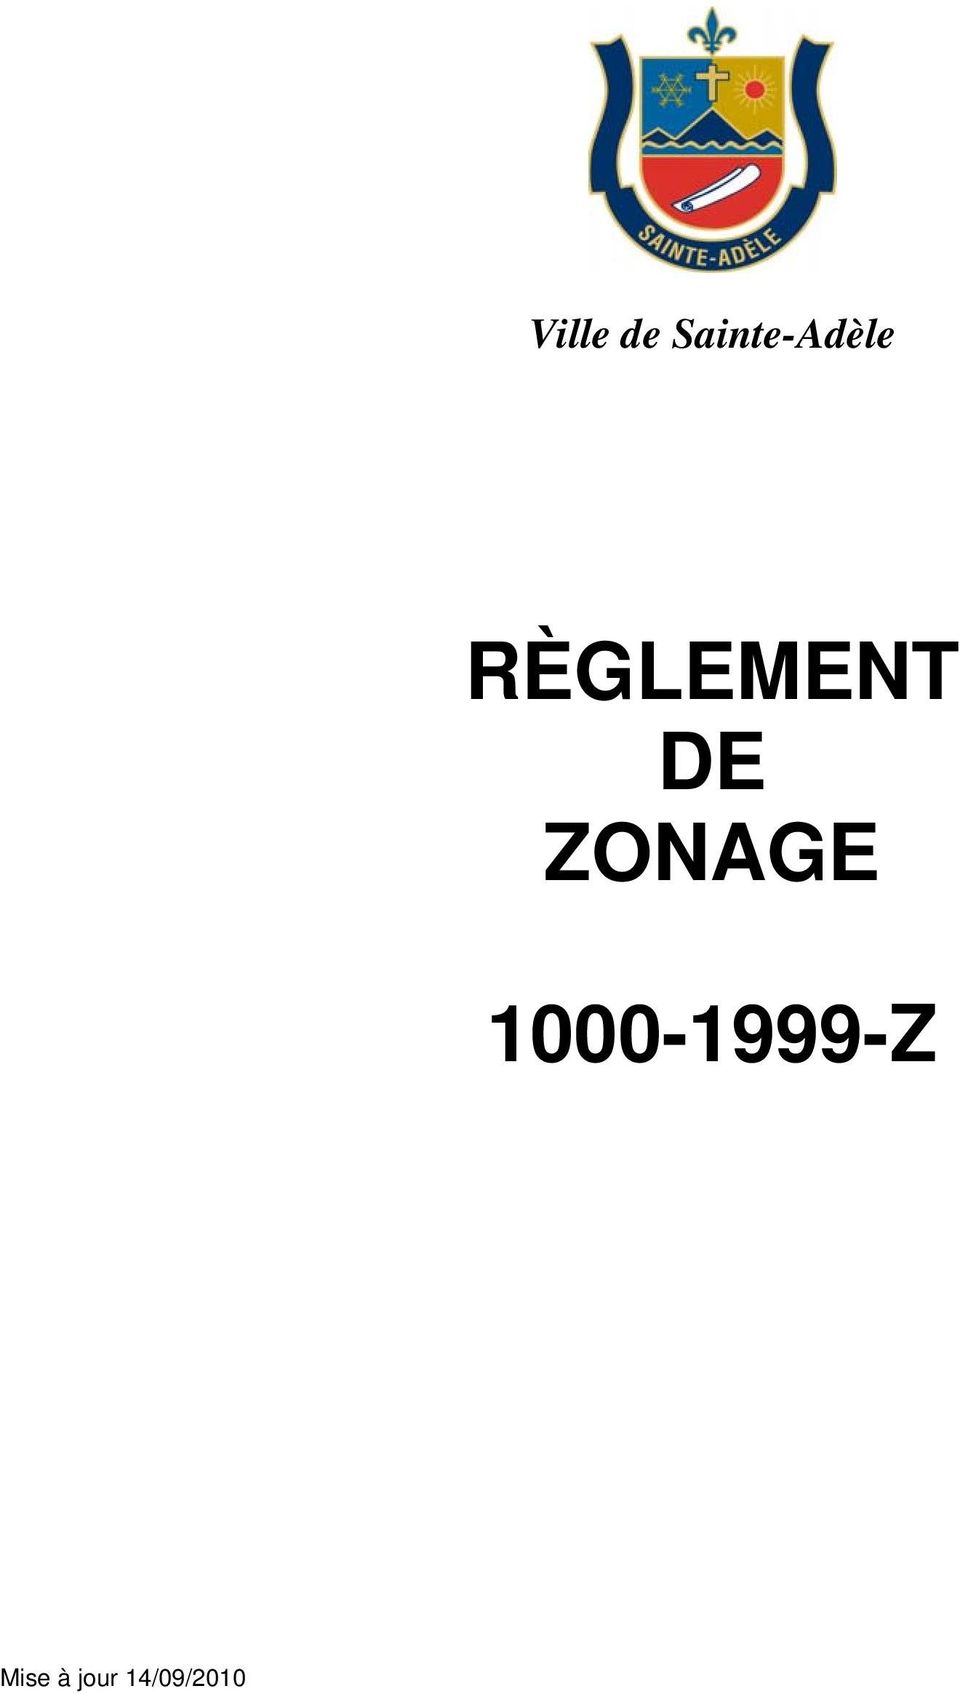 1000-1999-Z